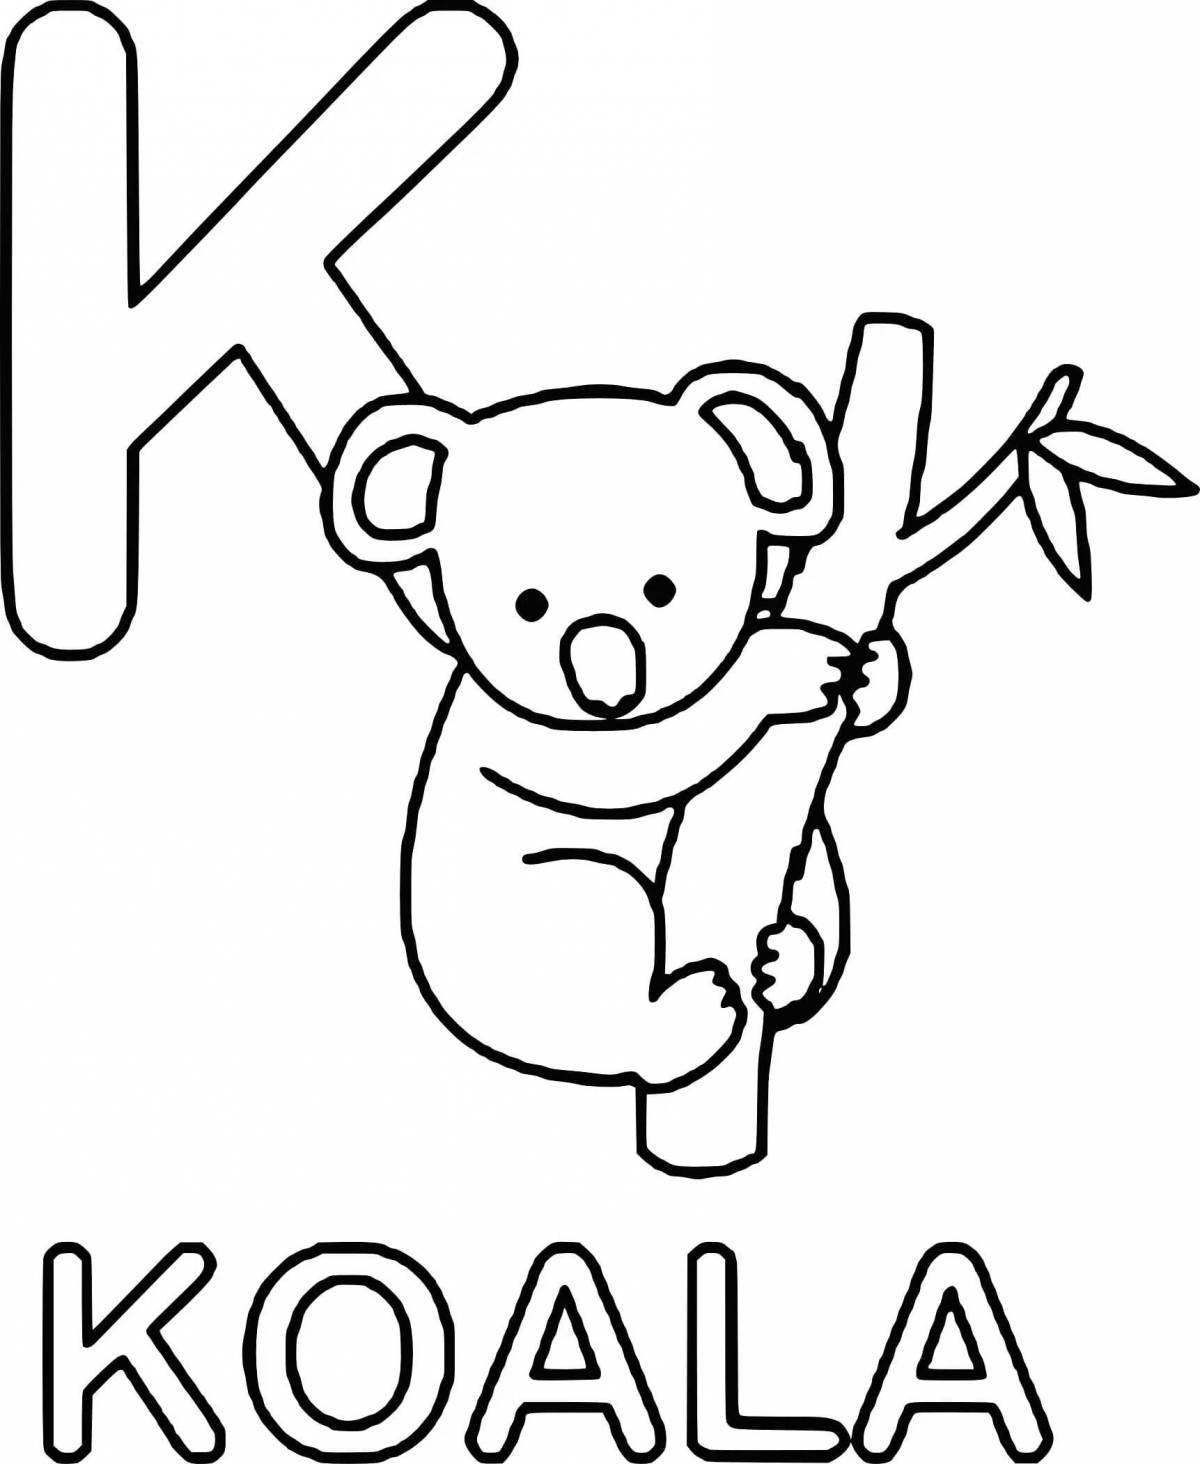 Неотразимая раскраска коала для детей